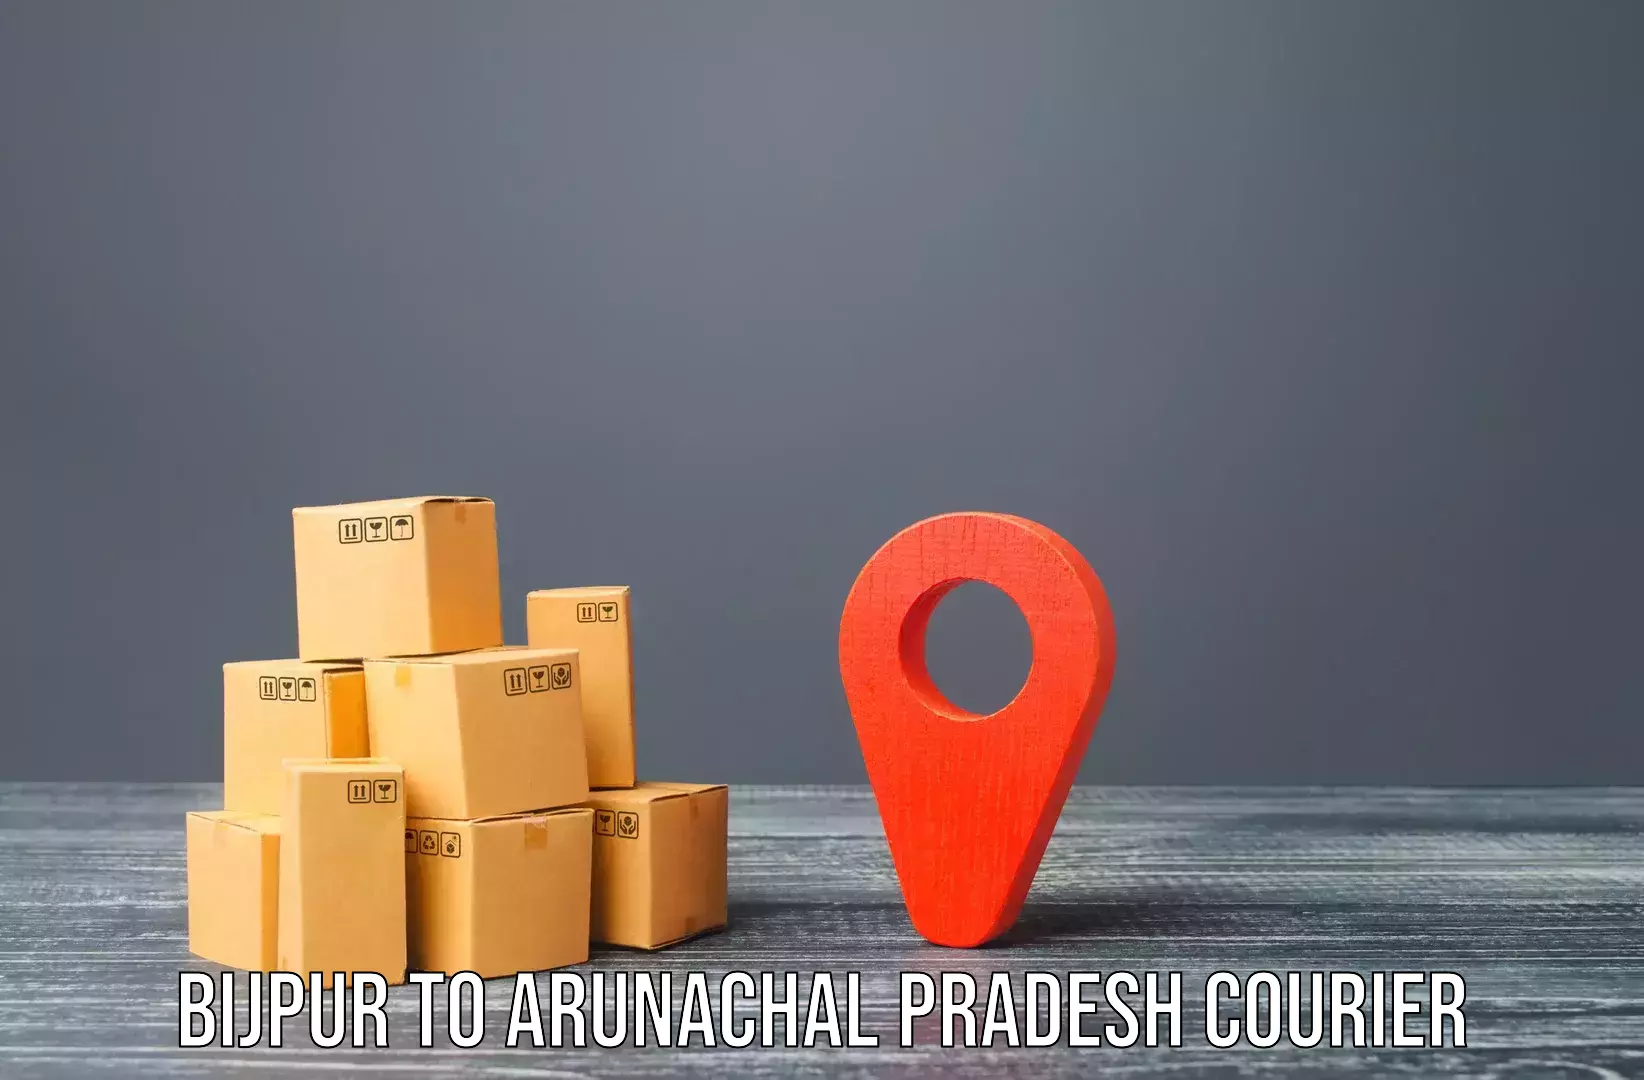 Furniture transport specialists Bijpur to Arunachal Pradesh